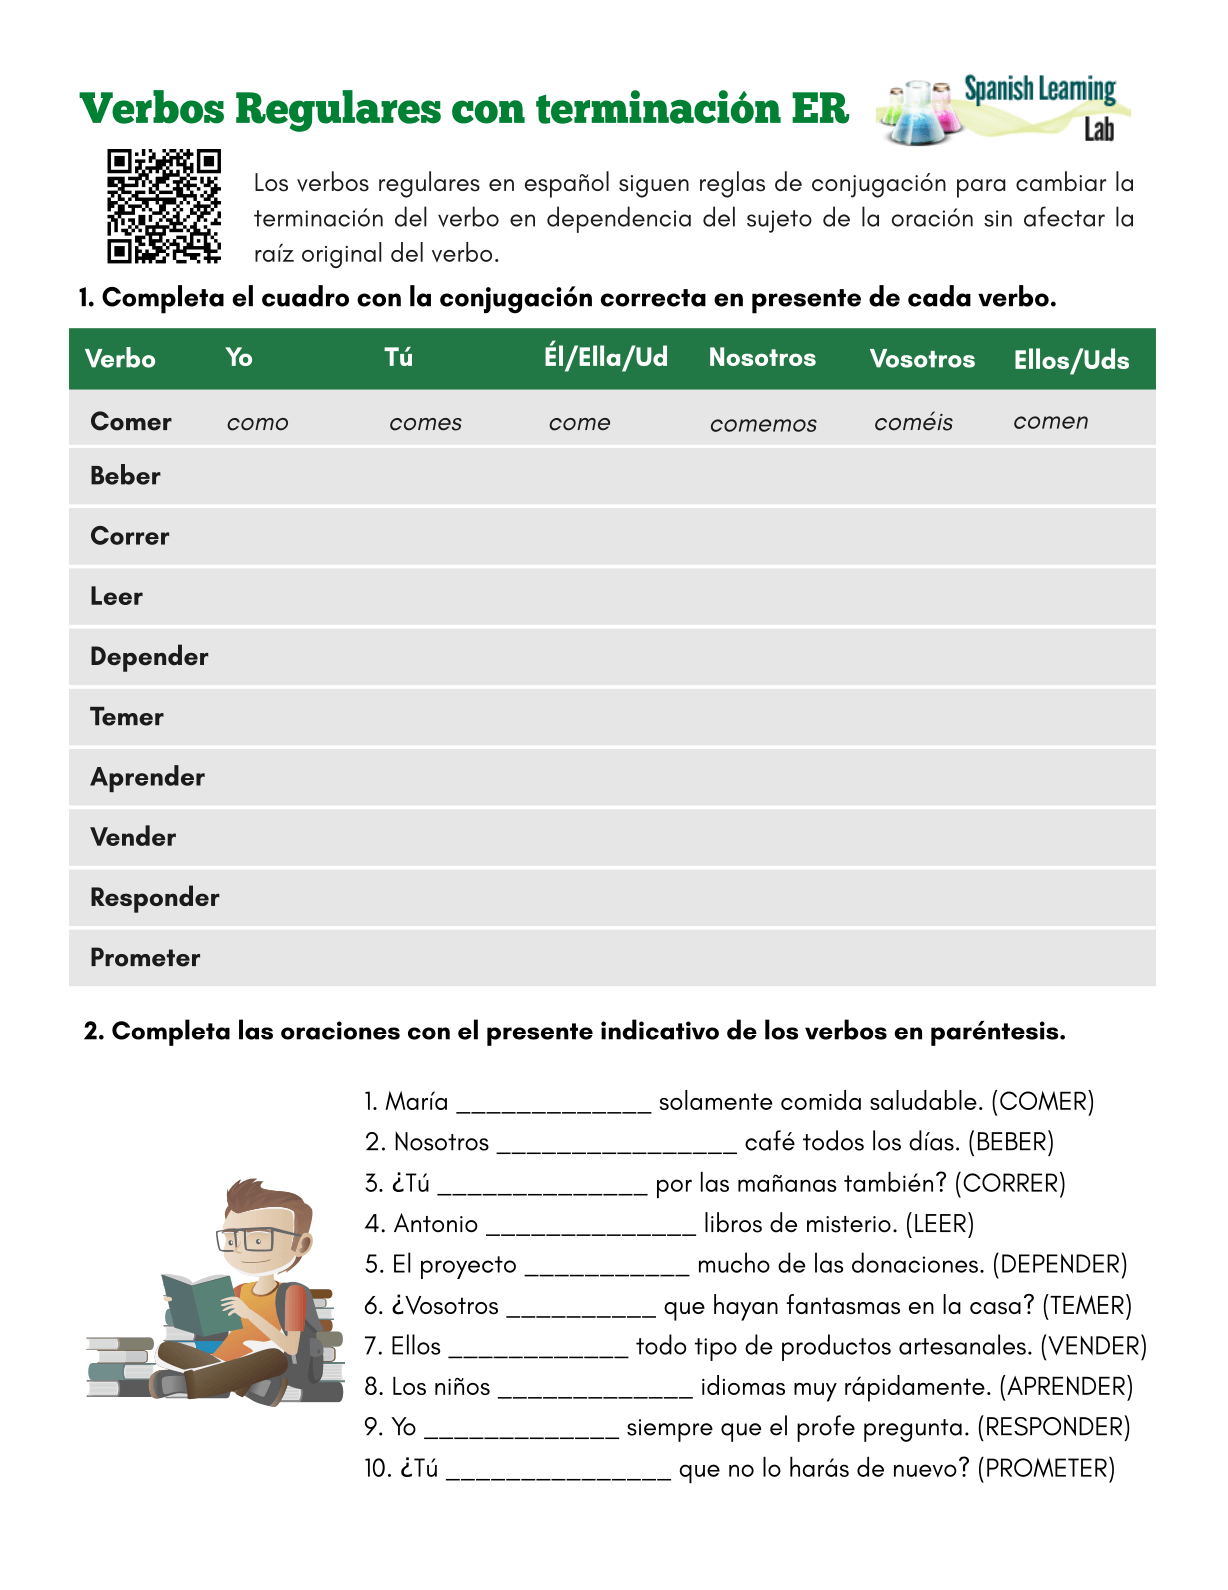 exercicios-verbos-regulares-espanhol-educa